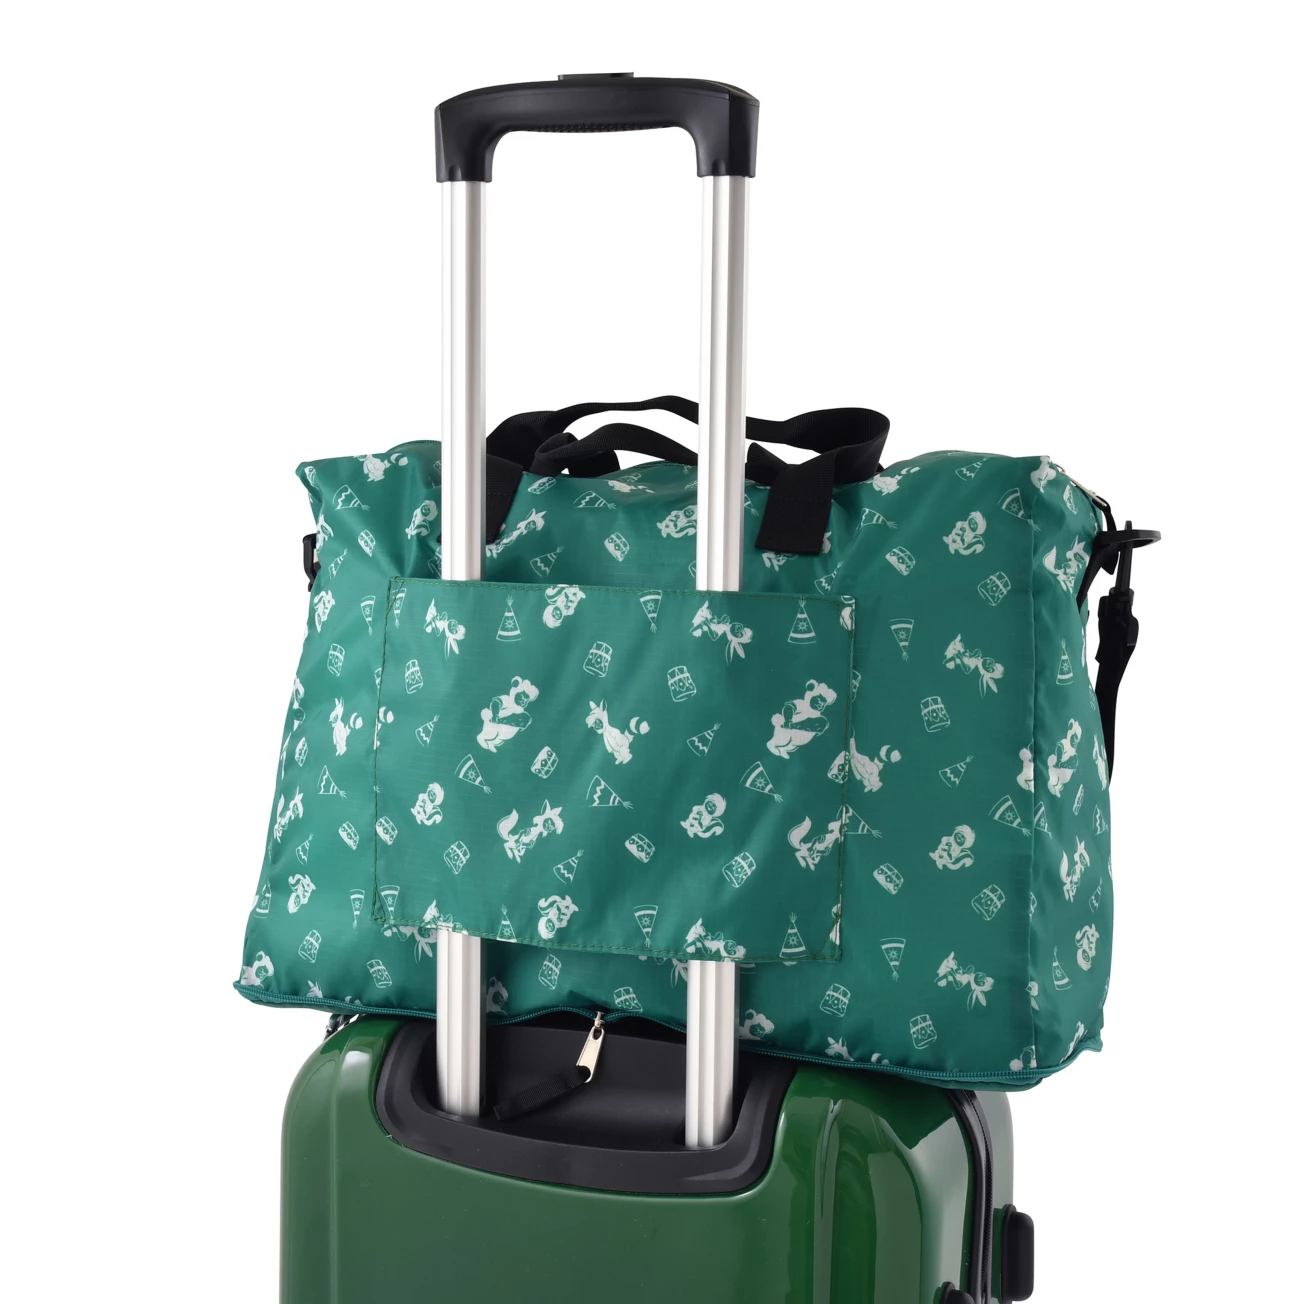 SDJ - Take me to wonderland Collection - Foldable travel bag